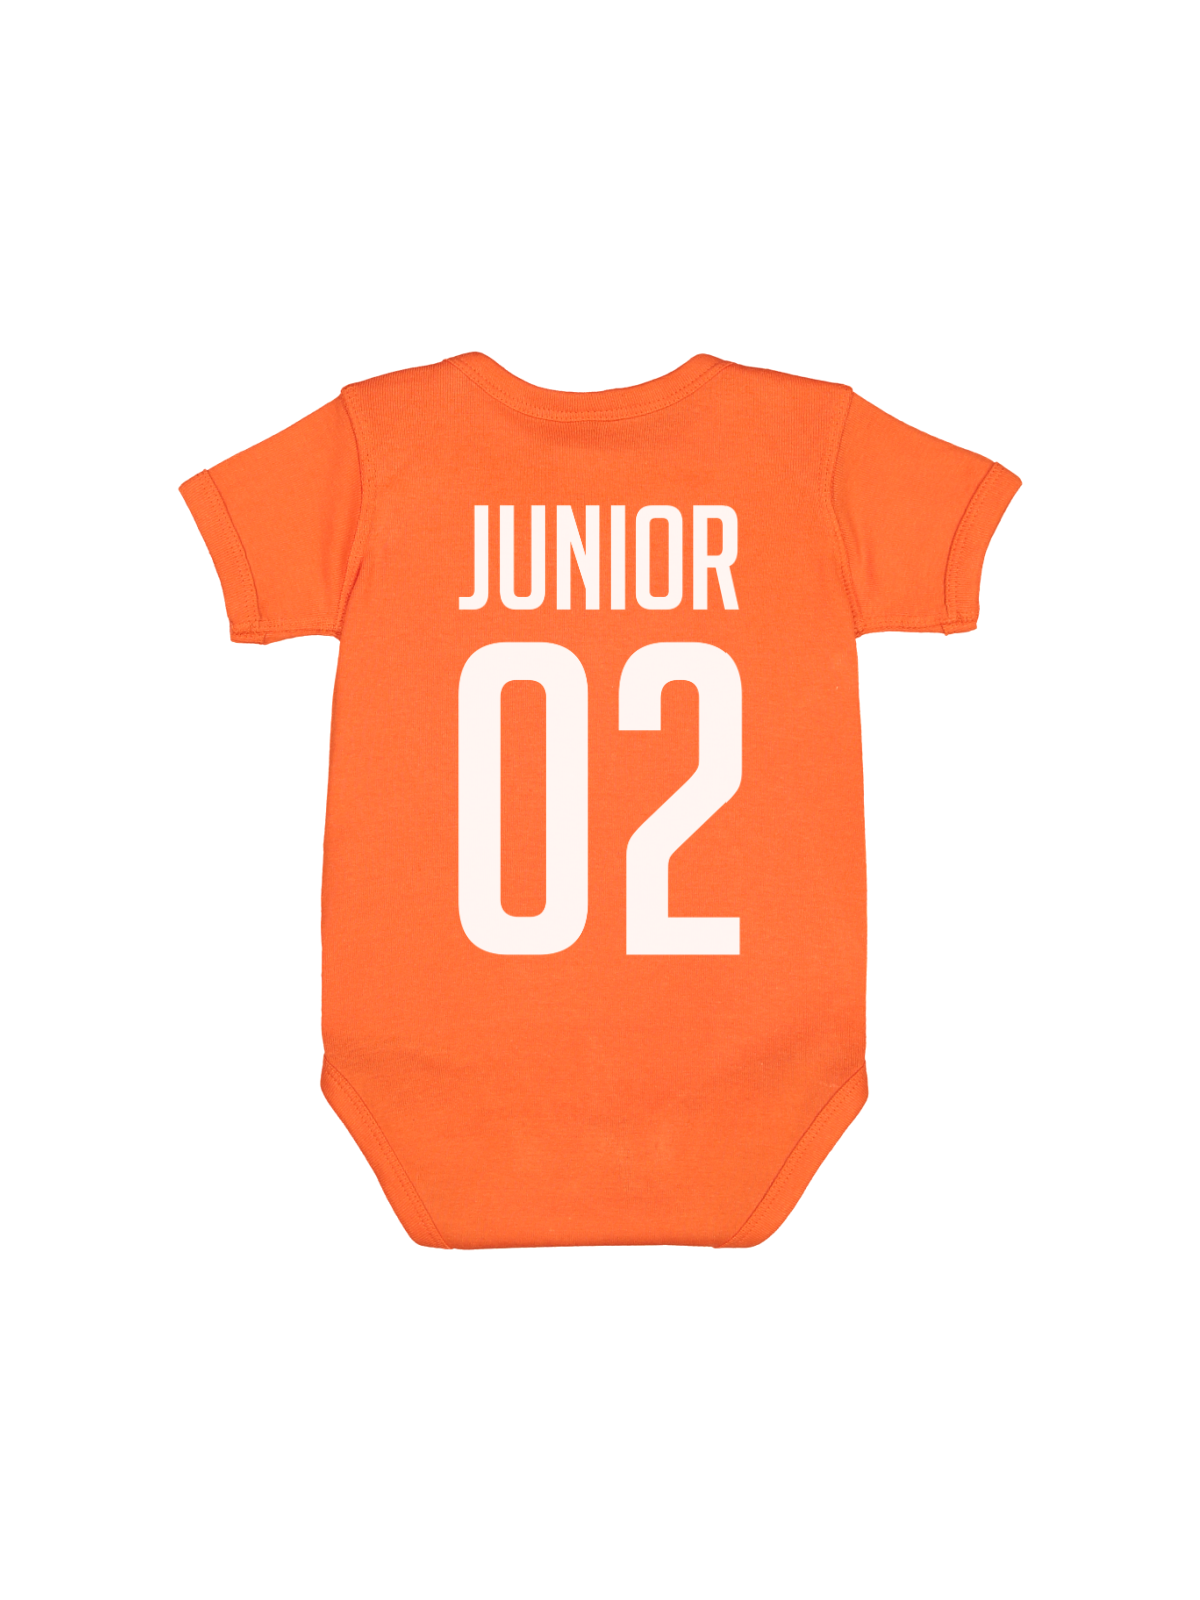 Daddy + Me Matching Jersey Shirts - Orange